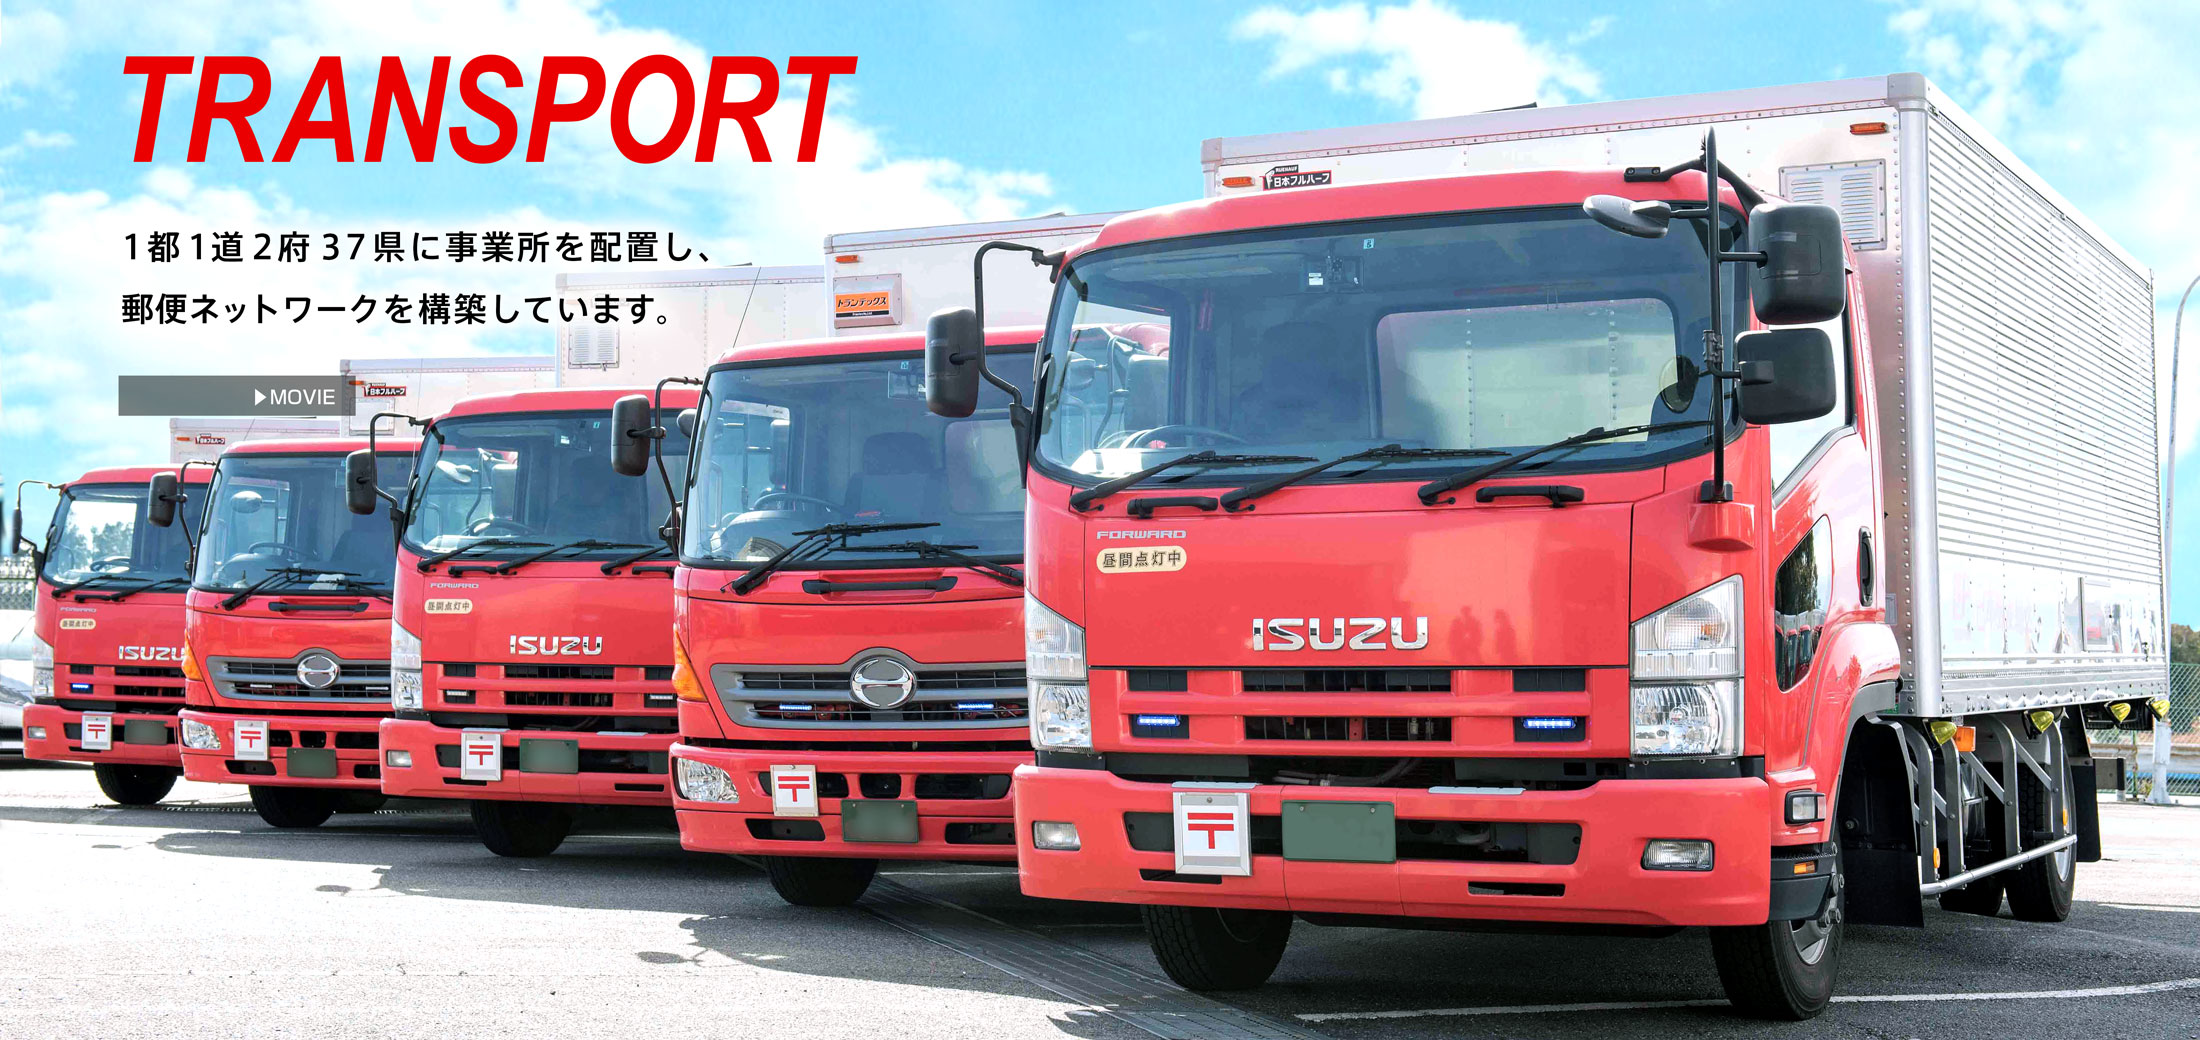 TRANSPORT 1都1道2府37県に事業所を配置し、郵便ネットワークを構築しています。